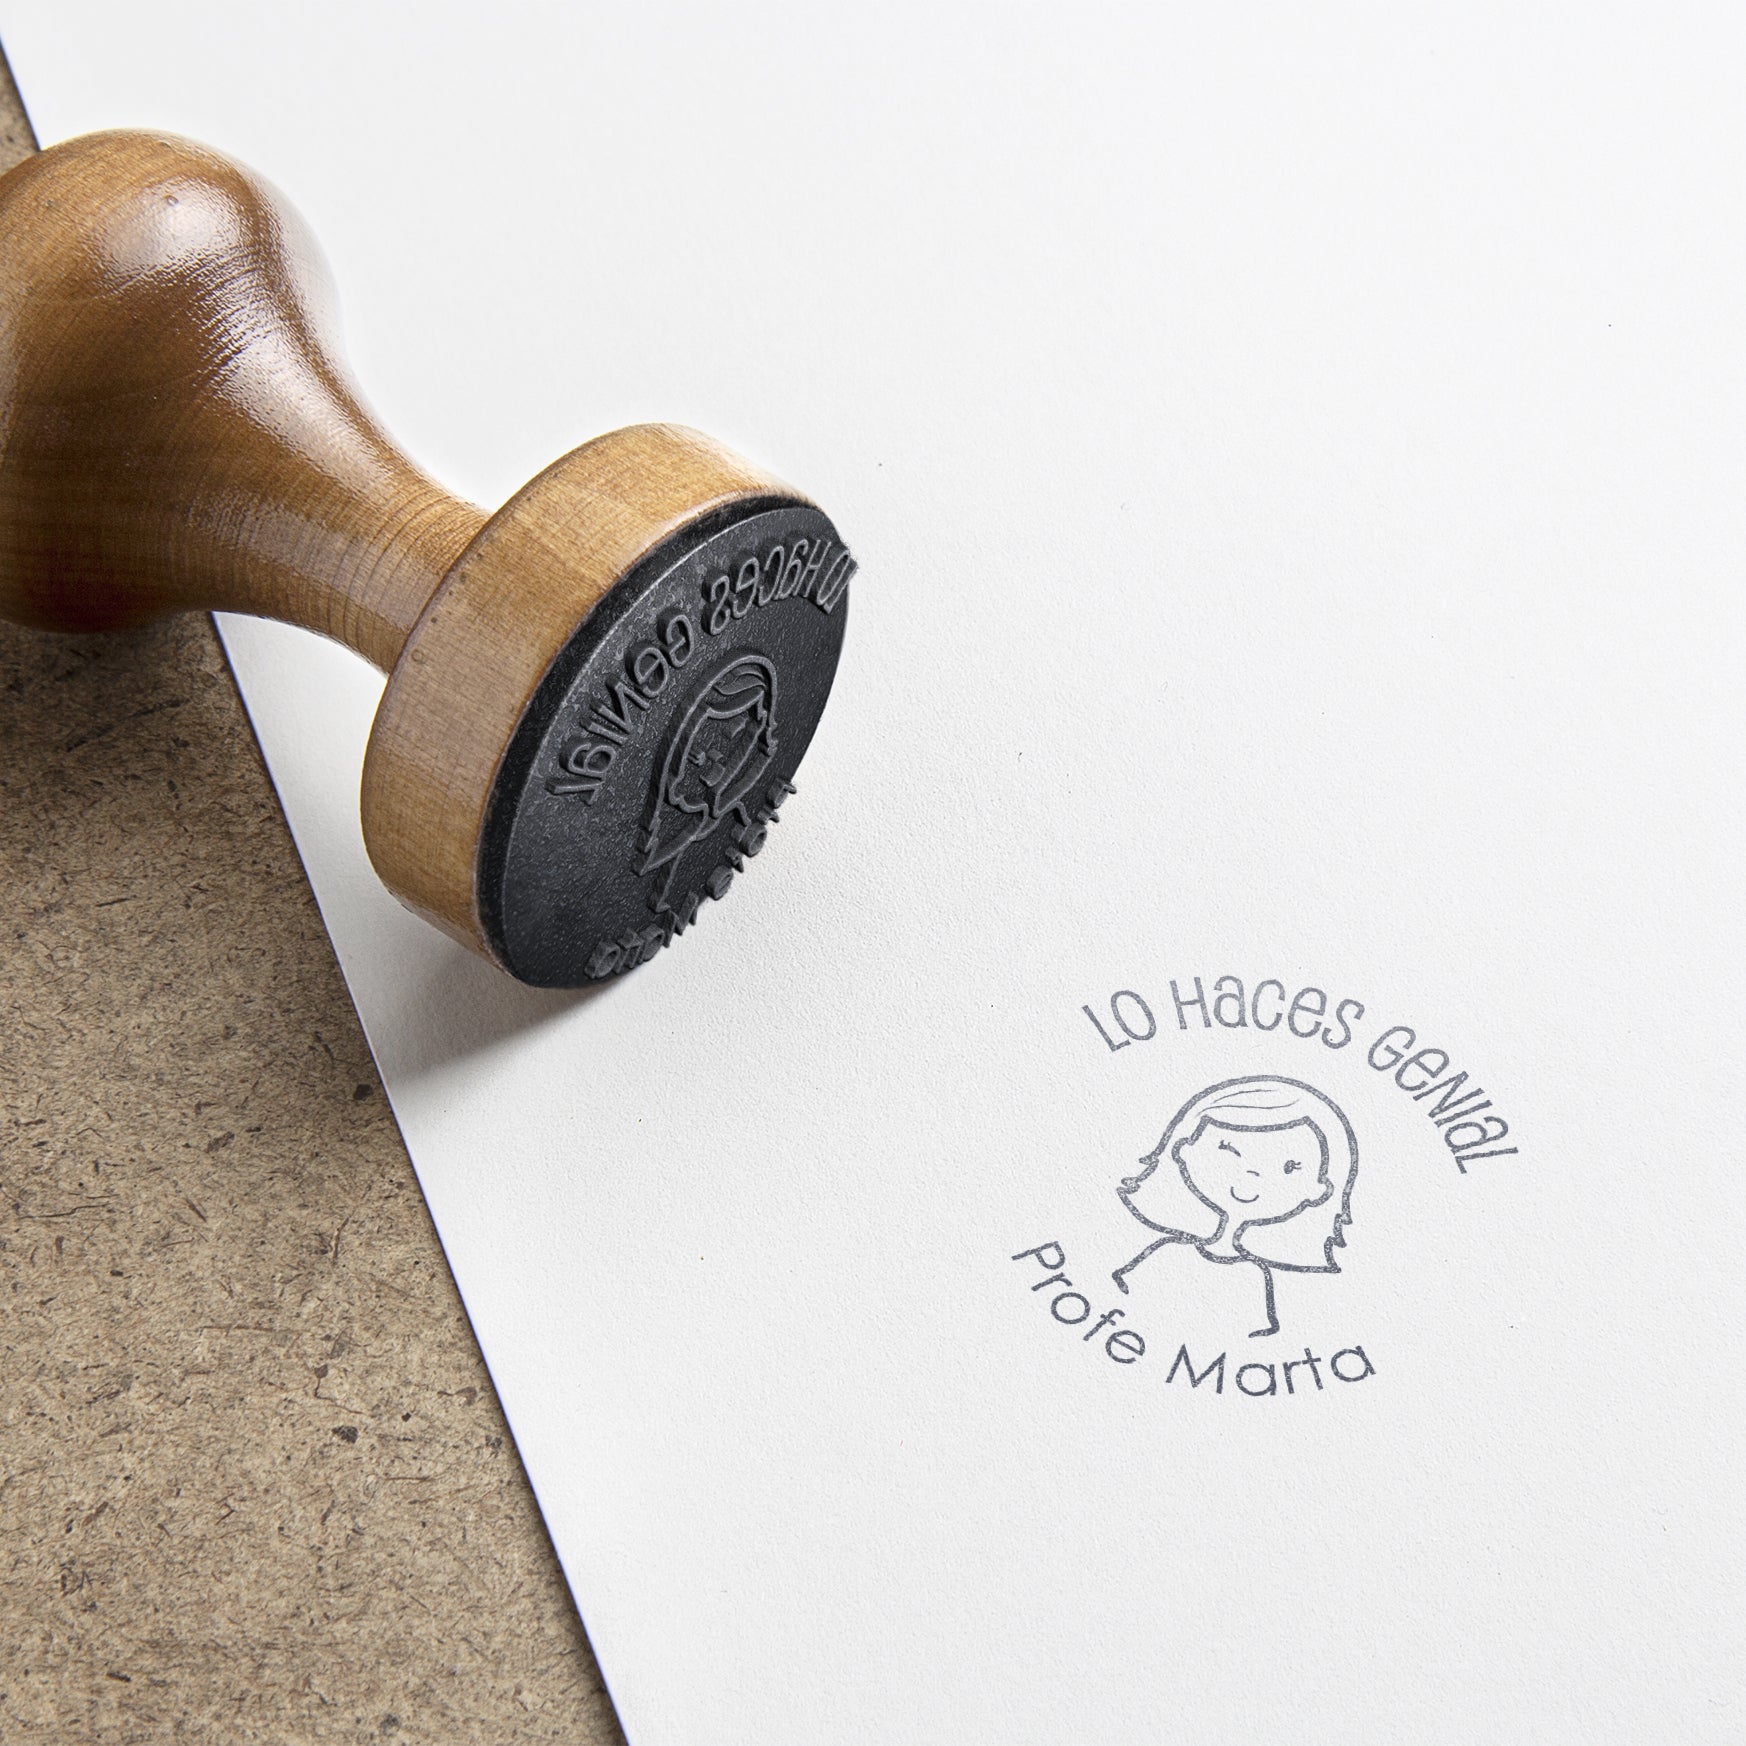 El nuestro es un sello personalizado de madera, con área de personalización de caucho de primera calidad.  Hechos a la antigua usanza, de calidad máxima. Puedes elegir tinta de color a juego (chequea entre los colores que te ofrecemos). 